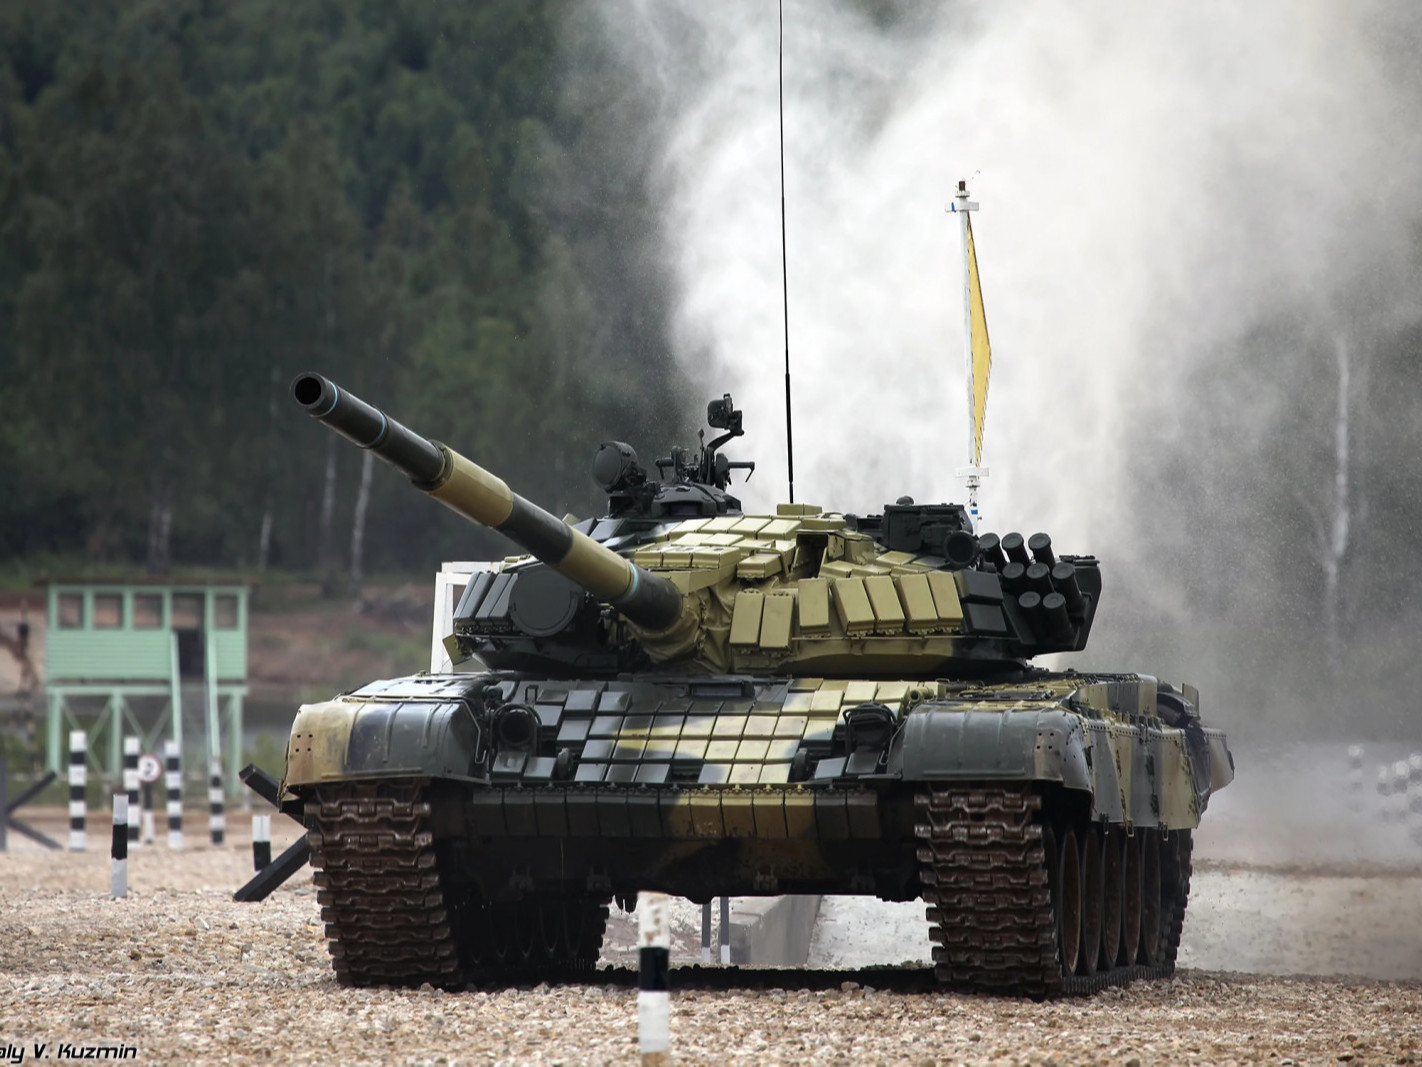 Польш улс Украин руу 200 гаруй танк илгээсэн гэж мэдээлжээ